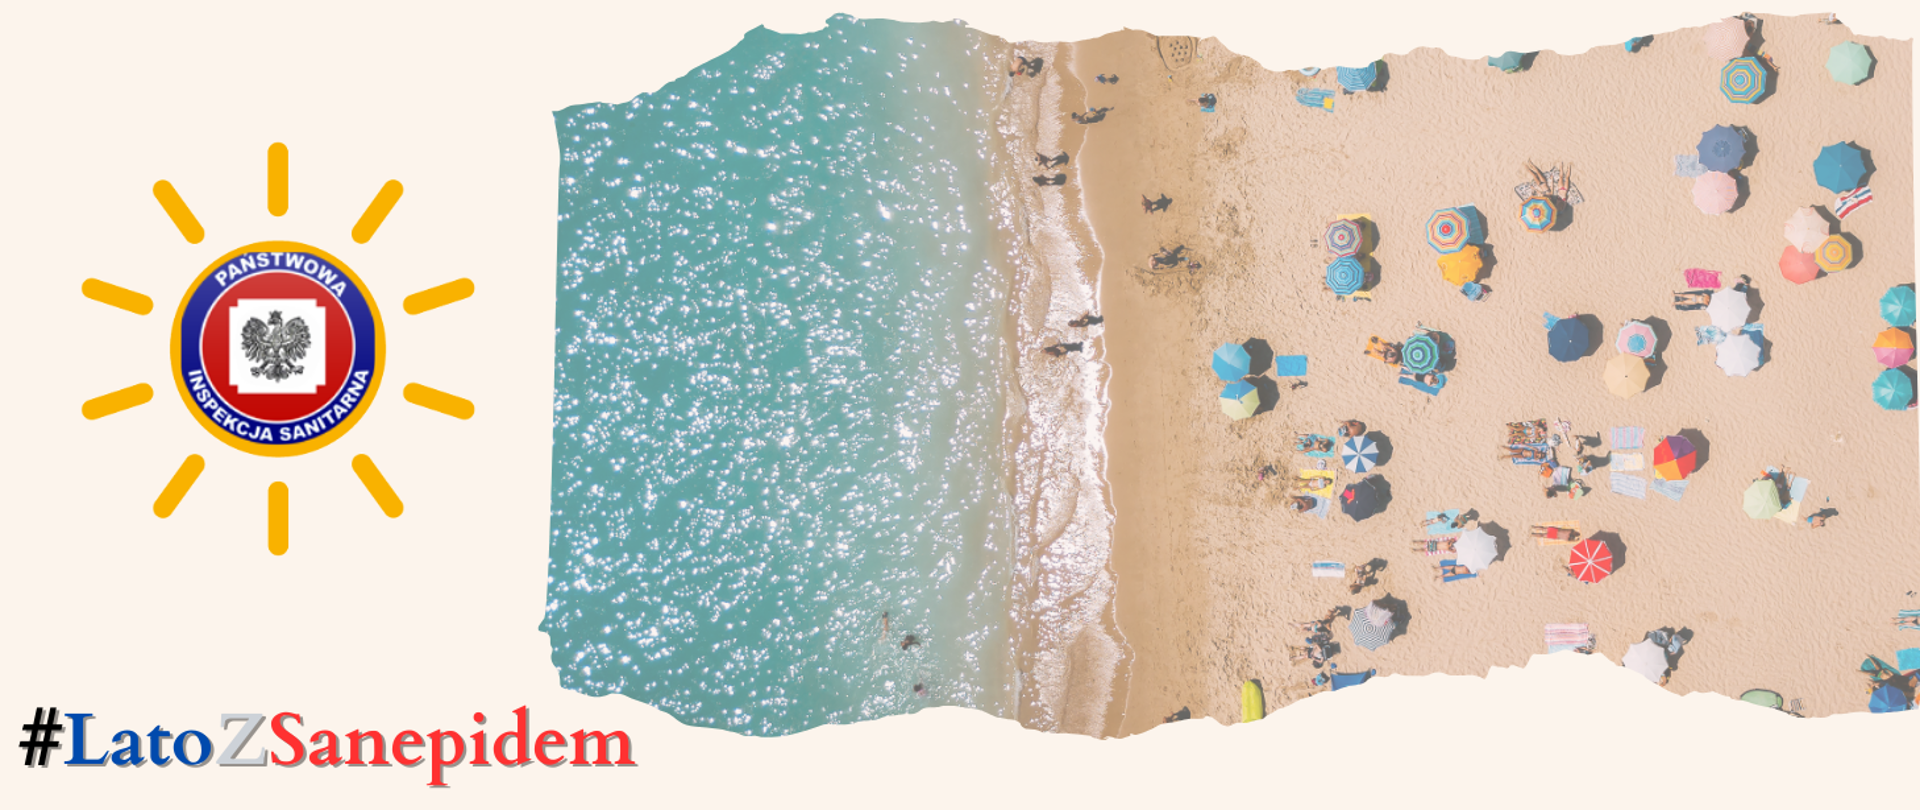 Plakat akcji Lato z sanepidem. na plakacie wycinek plaży z plażowiczami, obok logo Inspekcji Sanitarnej w słoneczku